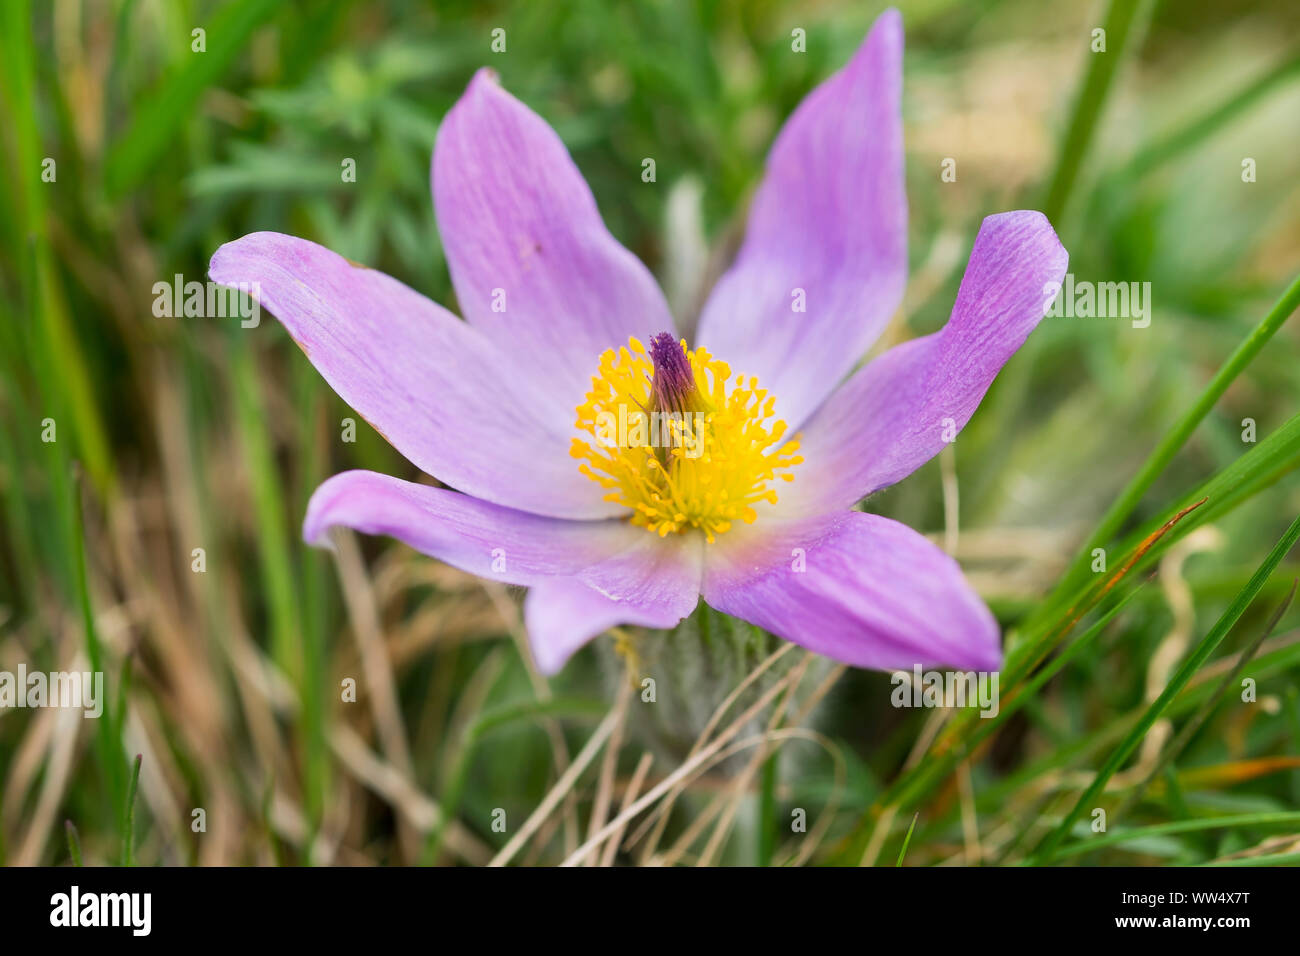 Greater pasque flower (Pulsatilla grandis or Pulsatilla vulgaris subsp. grandis) Jois, north Burgenland, Burgenland, Austria Stock Photo